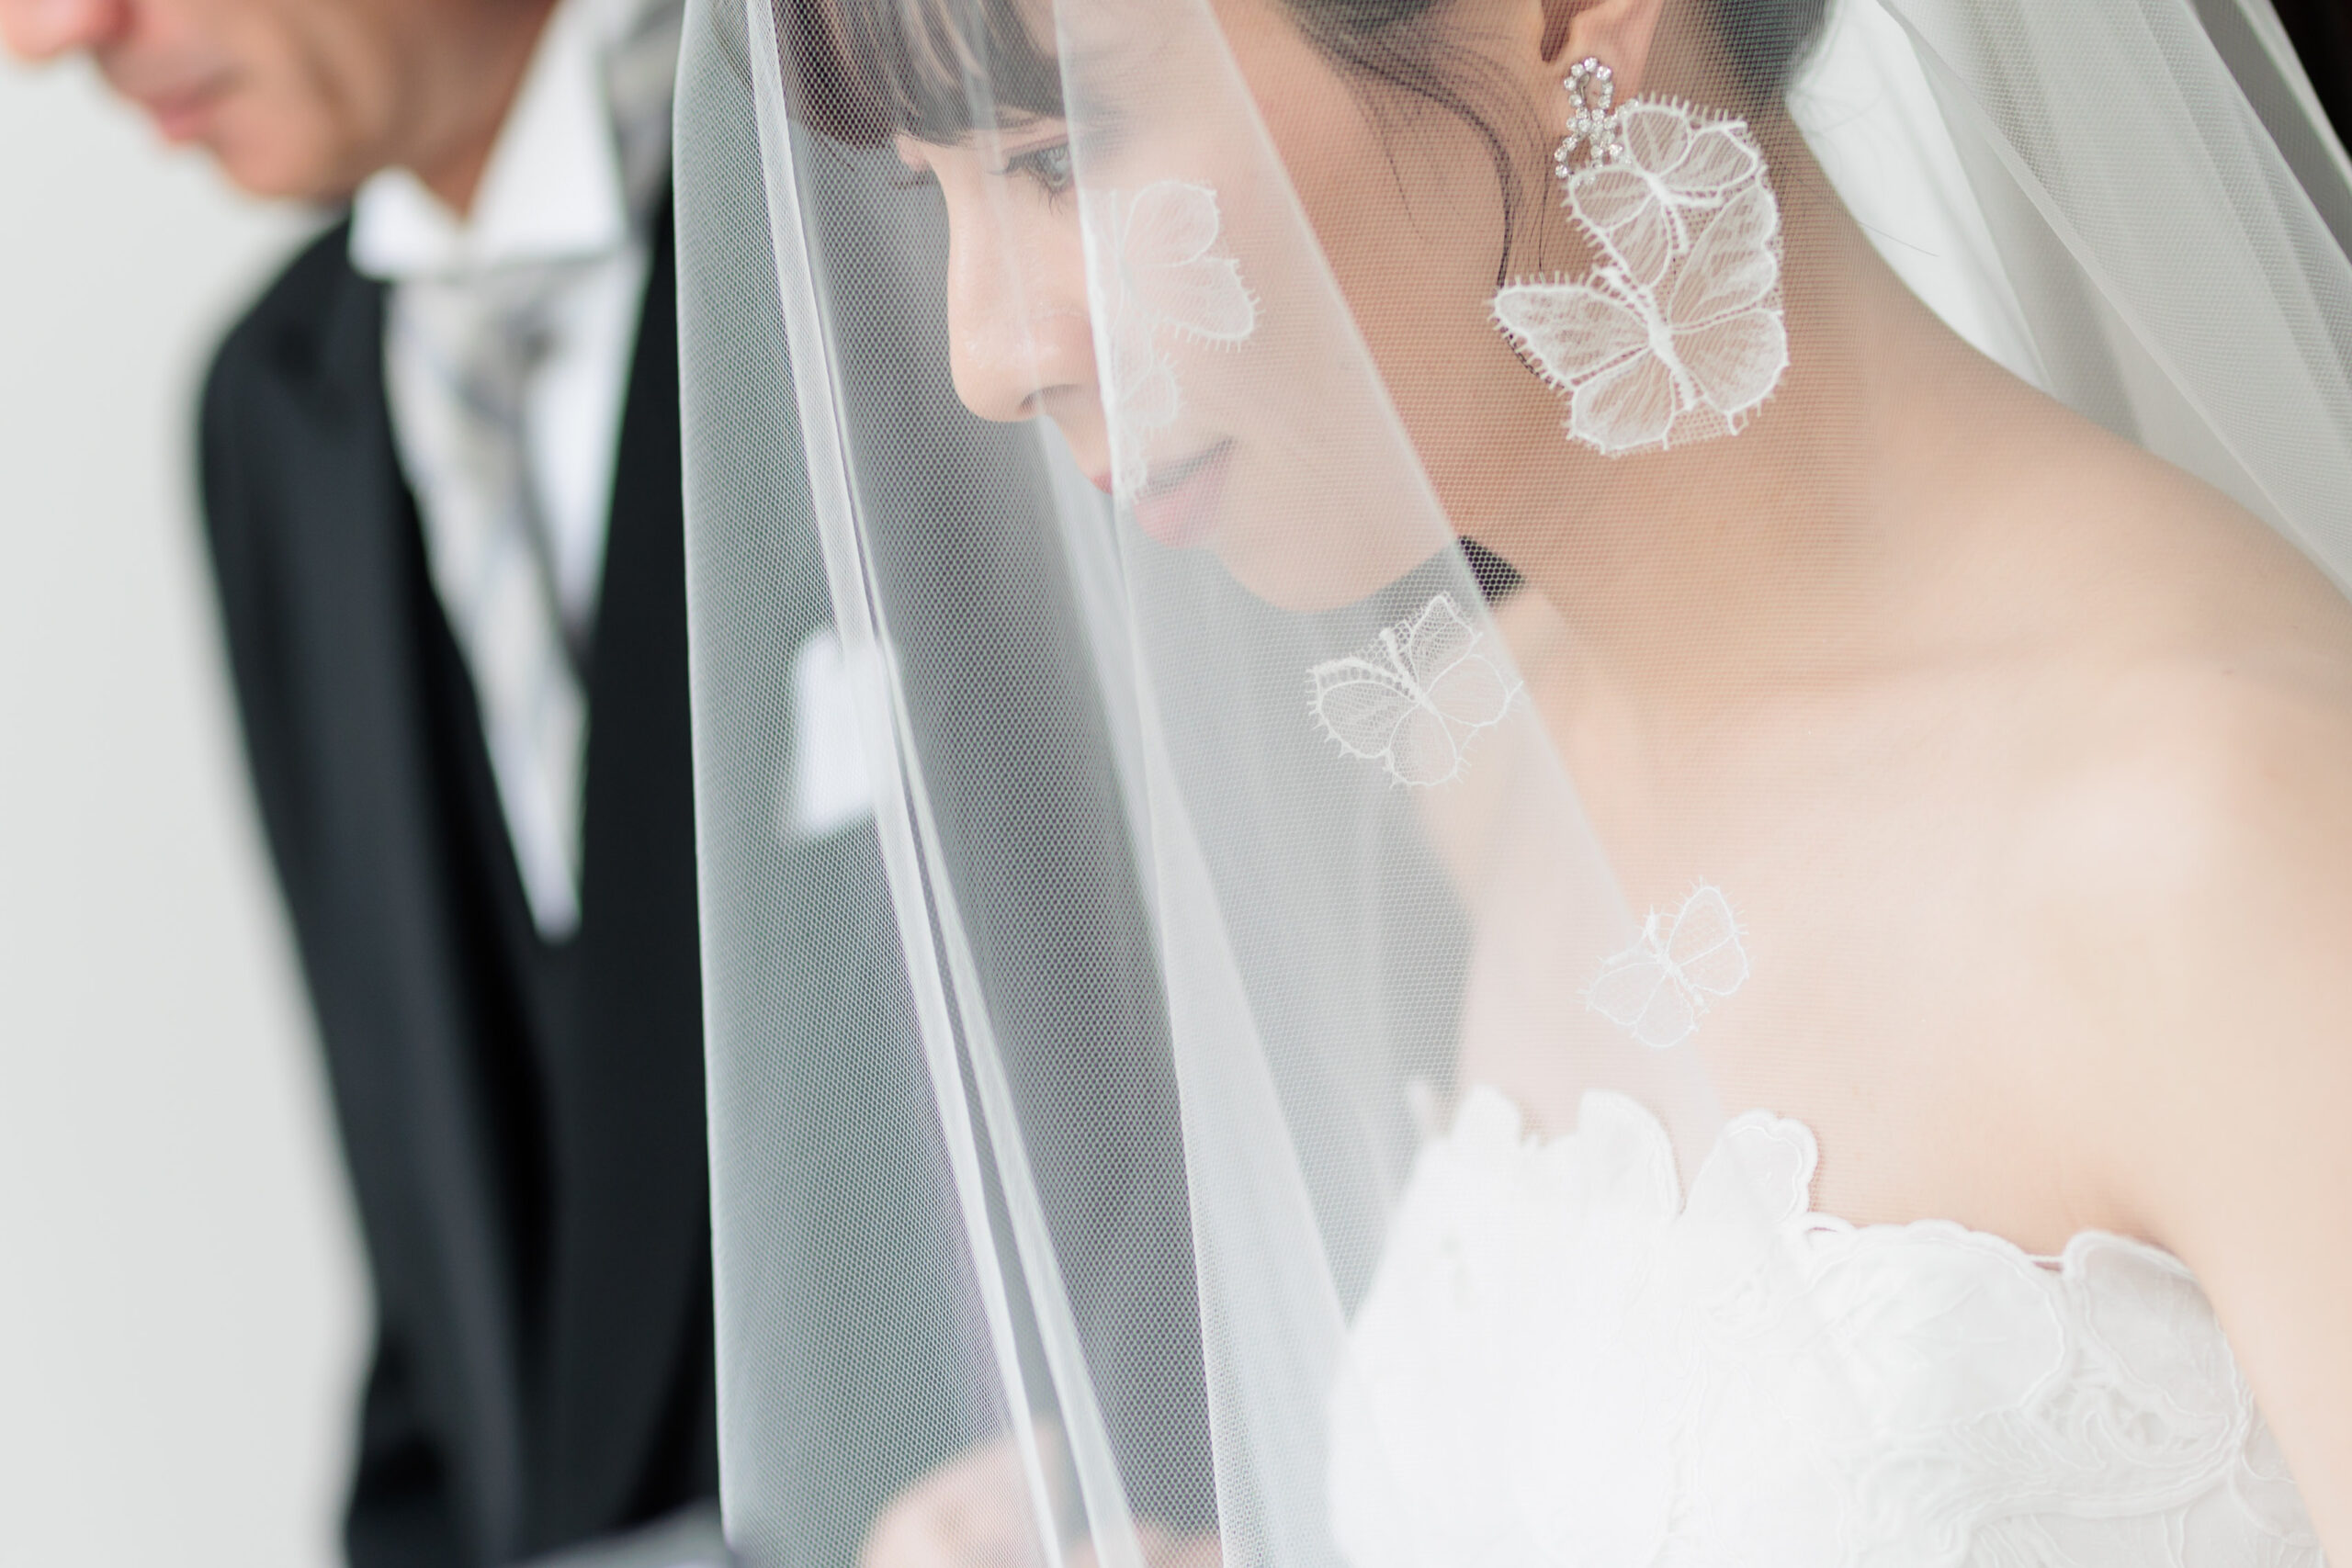 ザ トリート ドレッシング名古屋店の専属結婚式会場、ザ ナンザンハウスのチャペルに映えるザ トリート ドレッシングのオリジナルレースベールを身に纏った花嫁